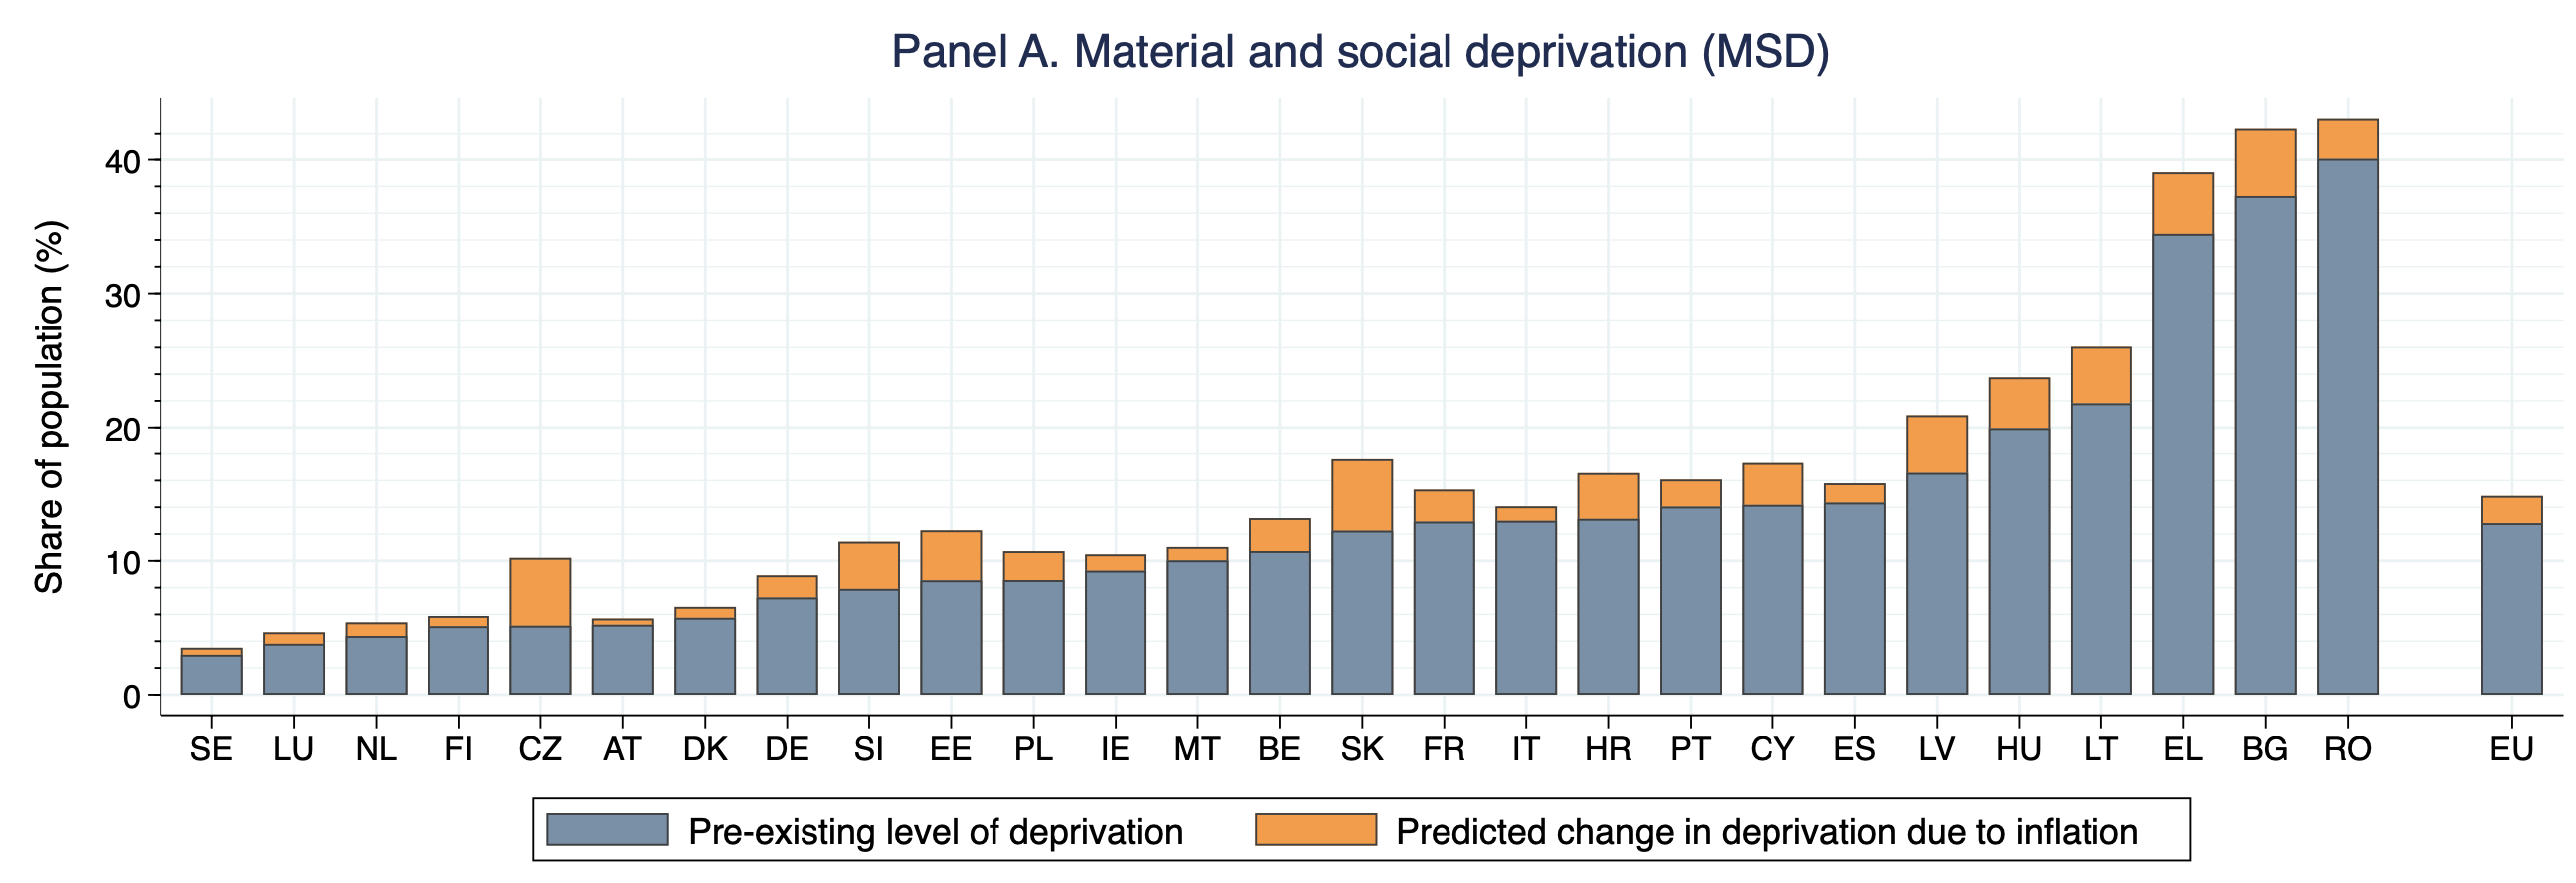 图2a通货膨胀对整个欧盟物质和社会剥夺的预期影响